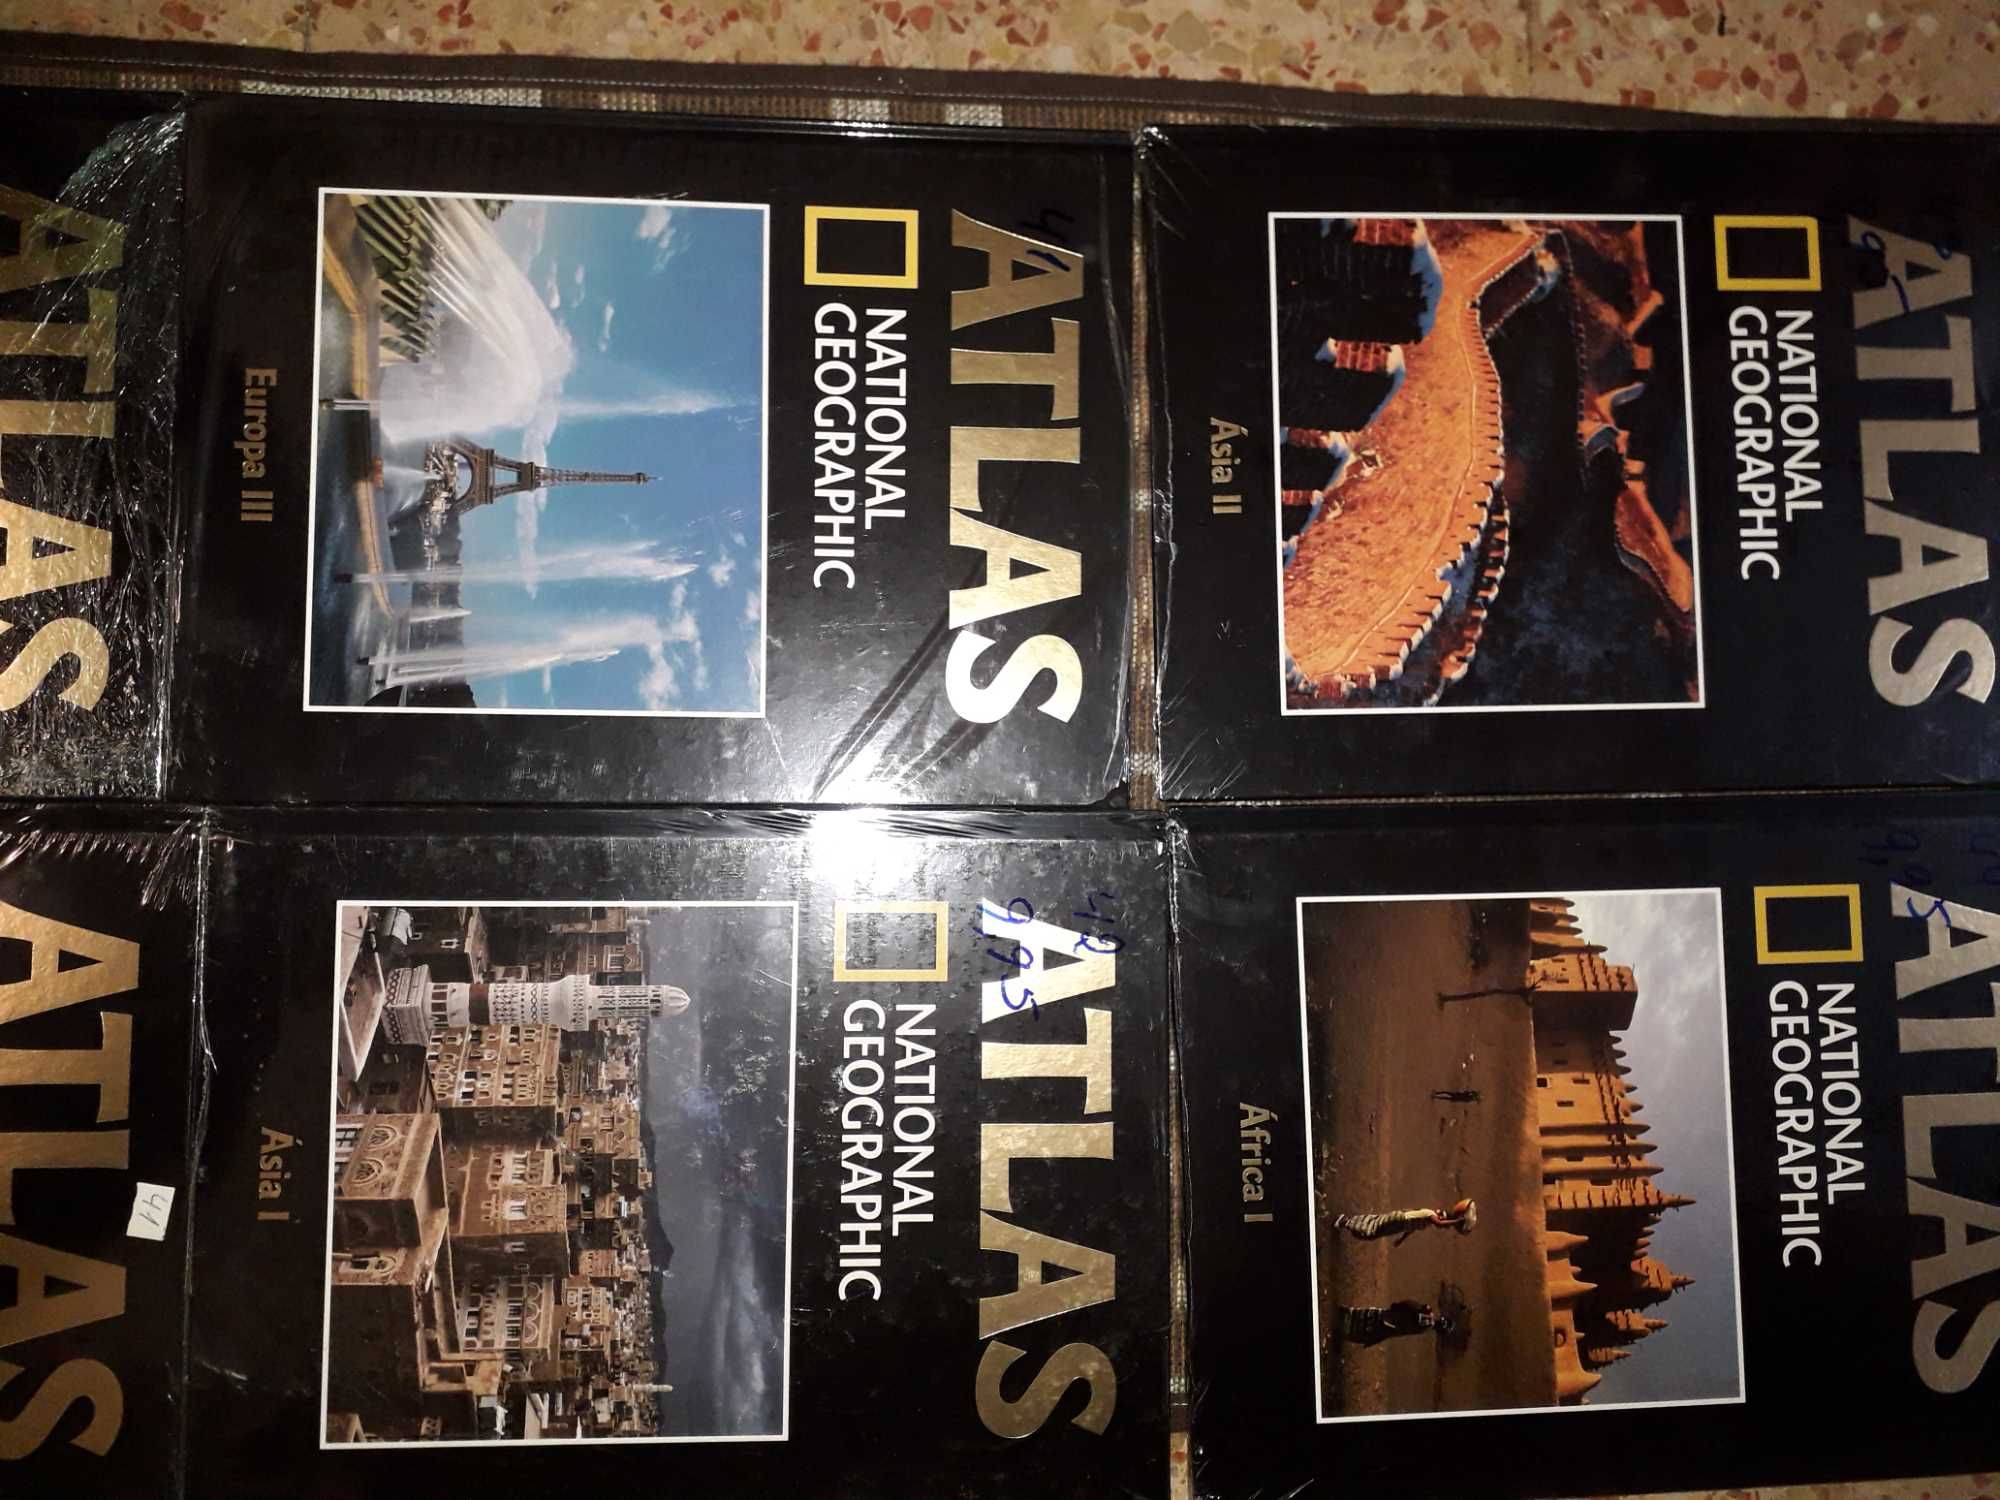 Coleção Atlas National Geographic